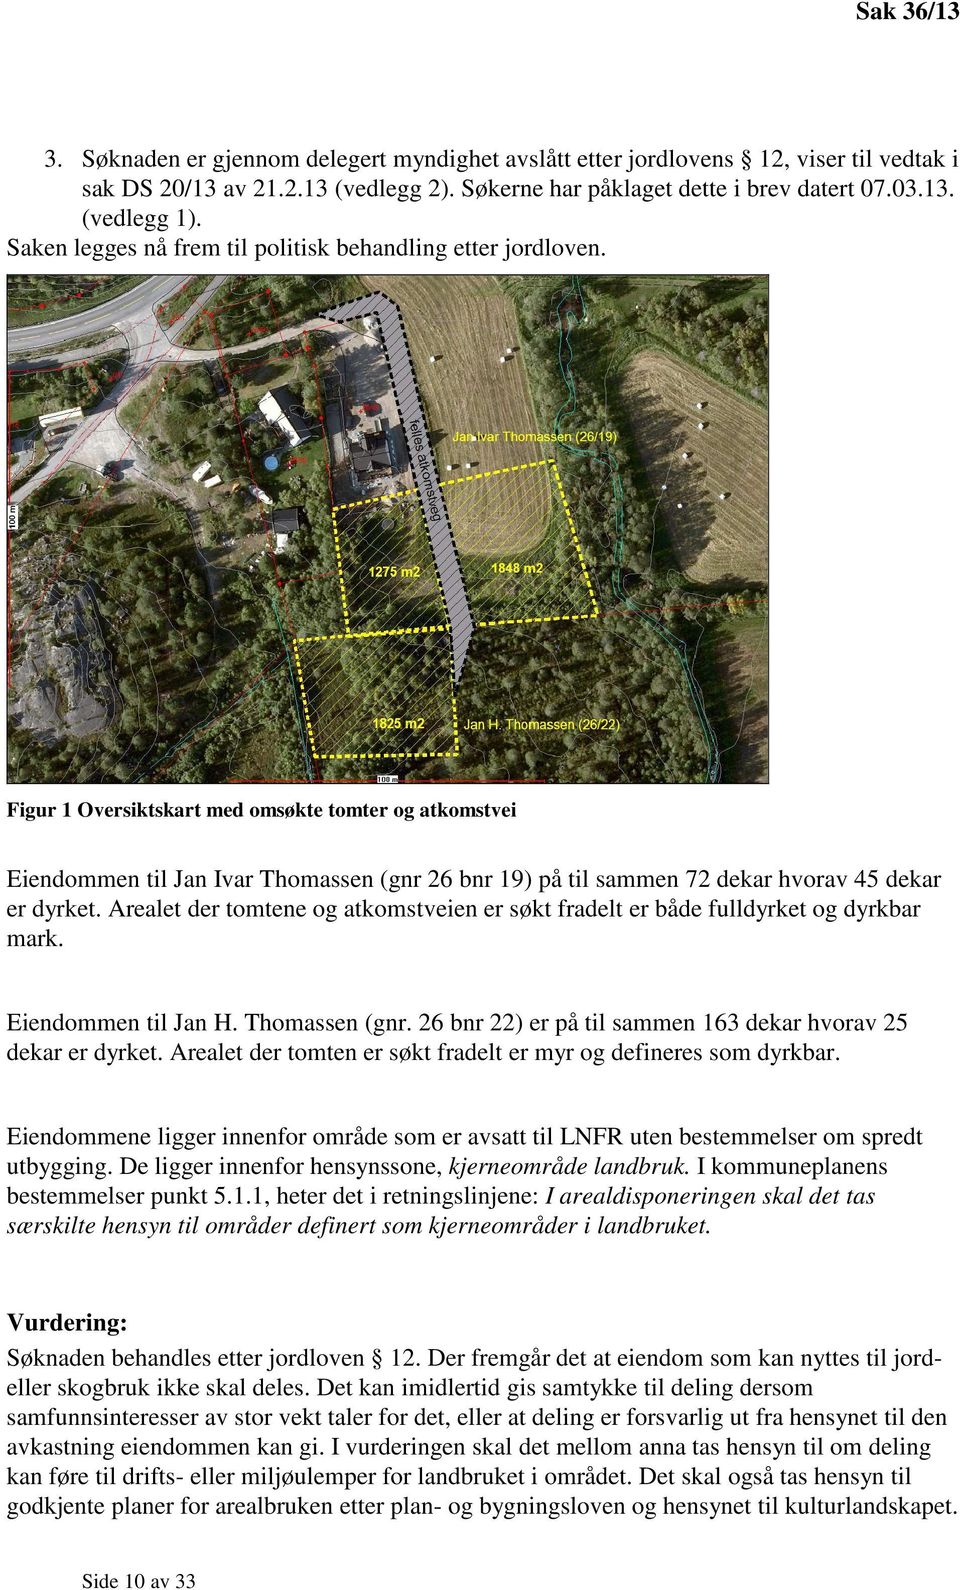 Figur 1 Oversiktskart med omsøkte tomter og atkomstvei Eiendommen til Jan Ivar Thomassen (gnr 26 bnr 19) på til sammen 72 dekar hvorav 45 dekar er dyrket.